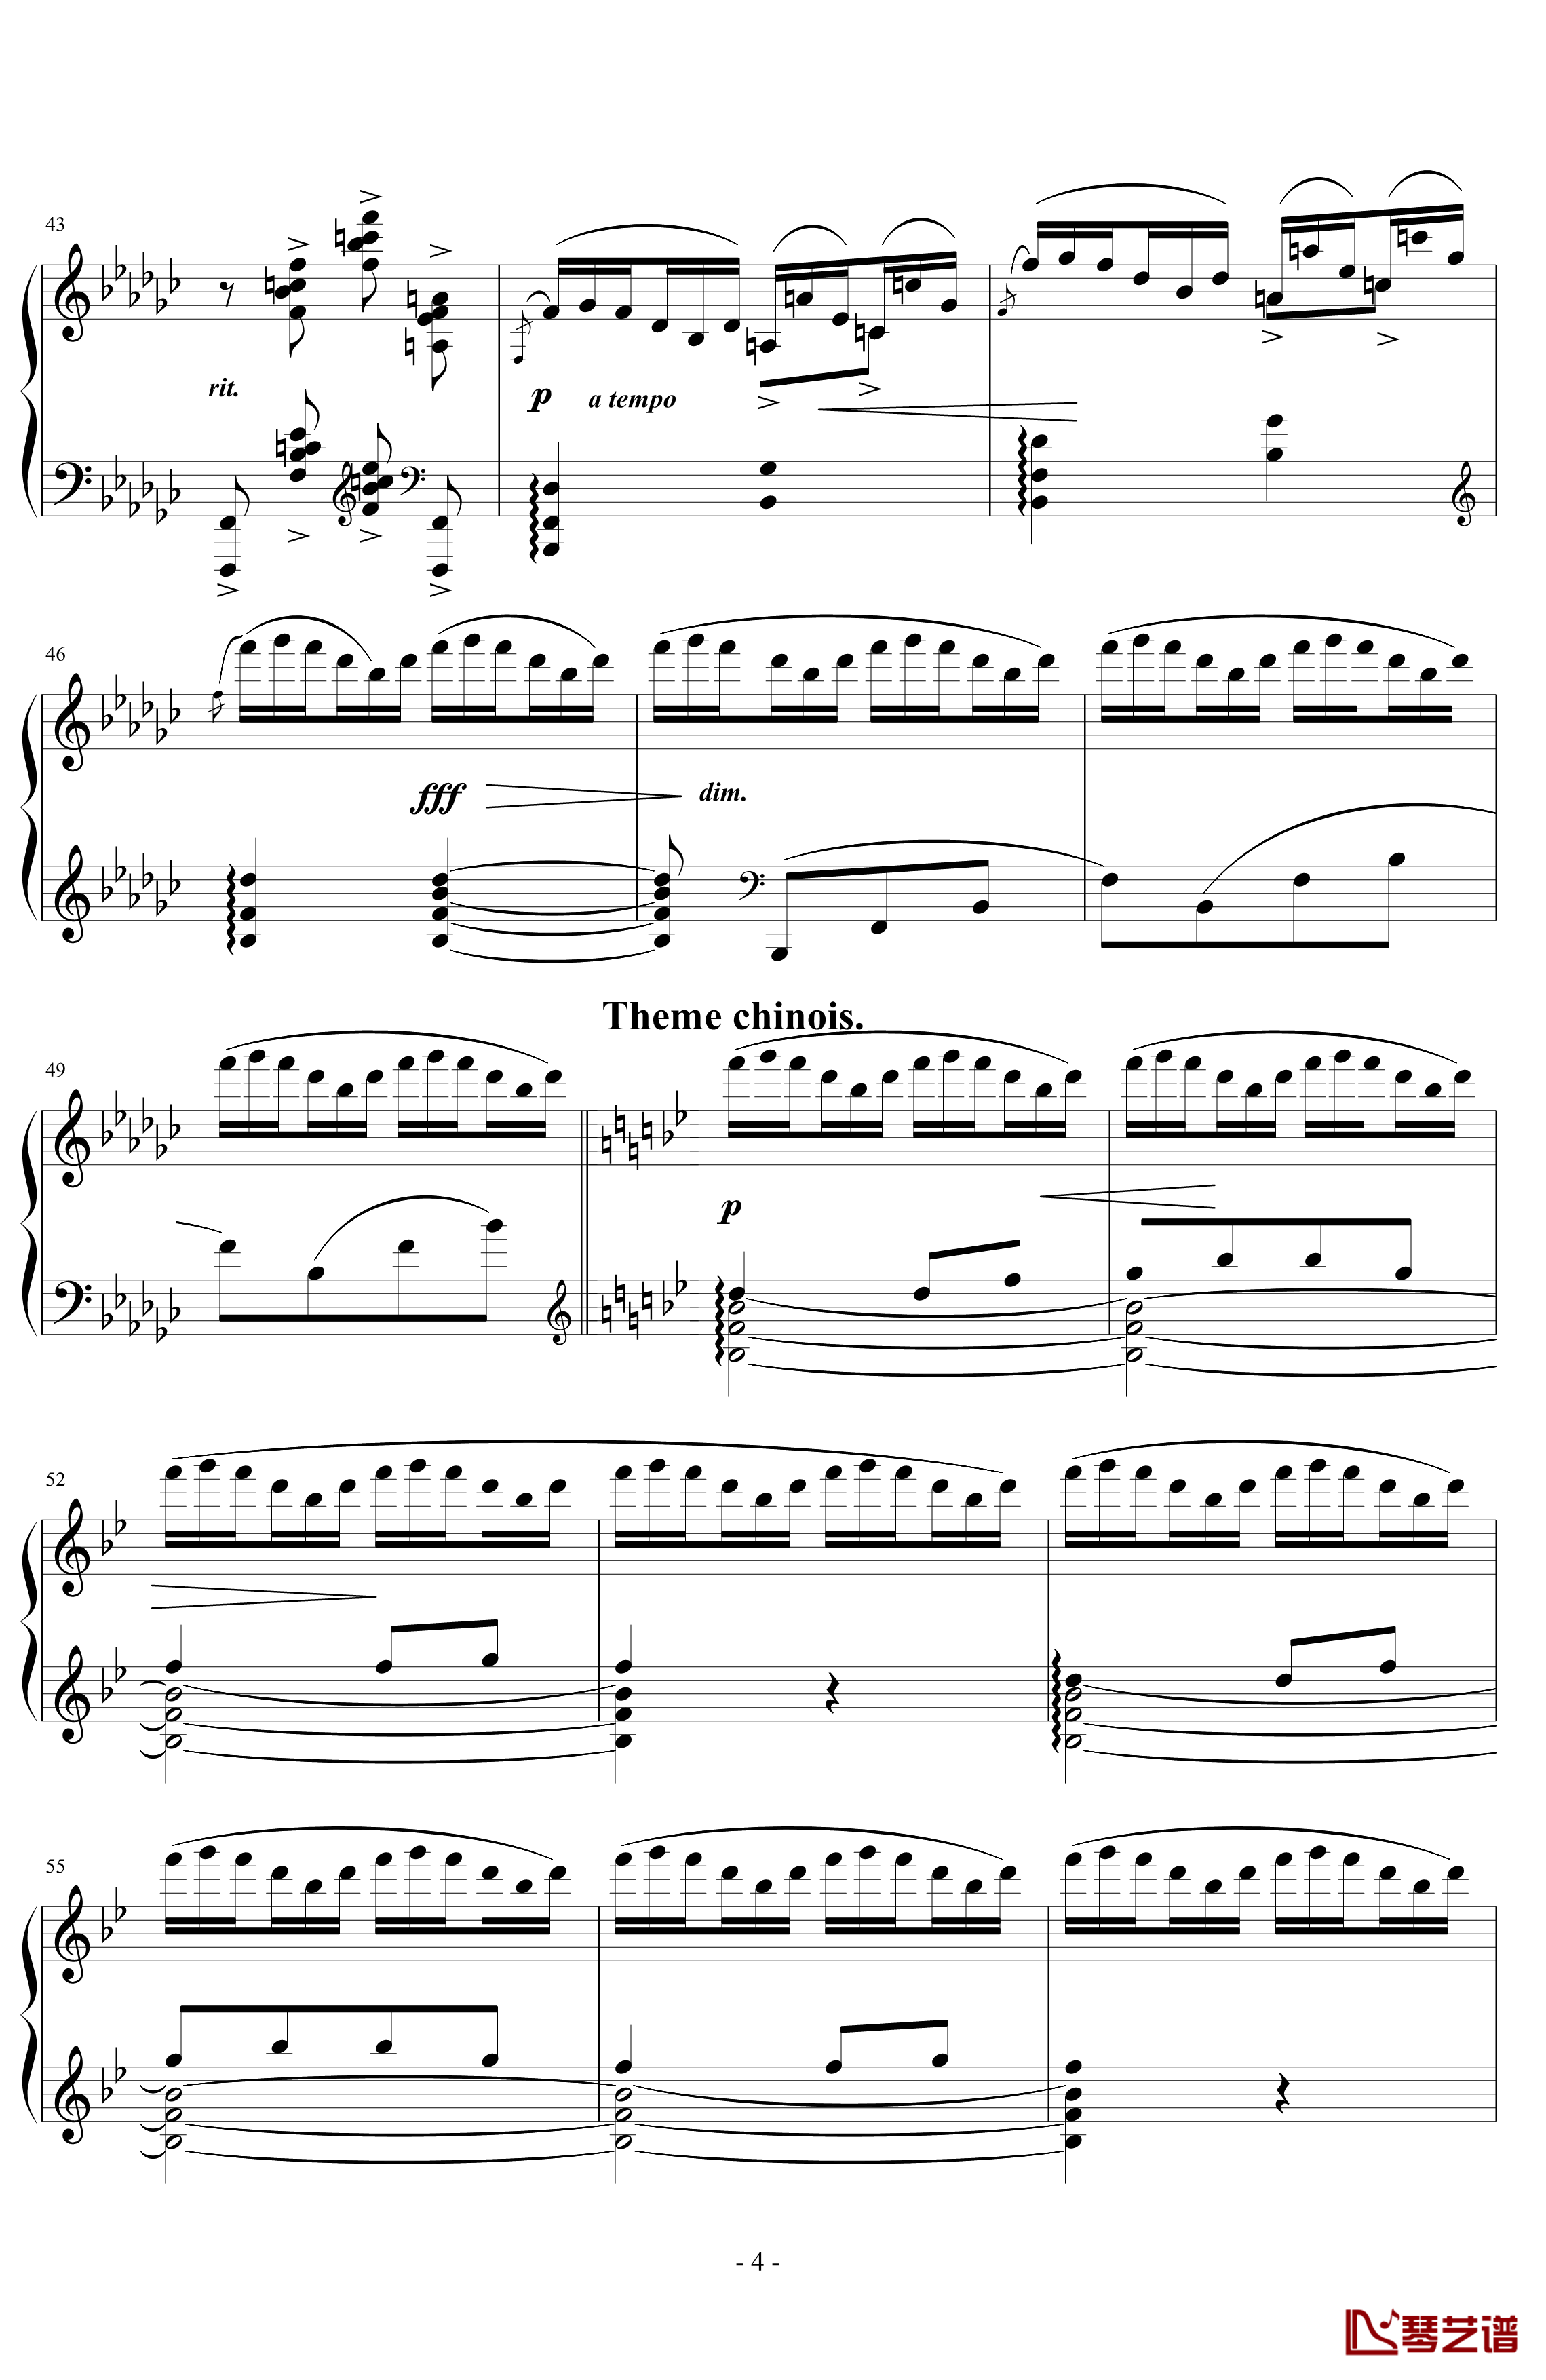 《练习曲Op.25 No.3》钢琴谱-阿连斯基-希望能为大家带来惊喜4